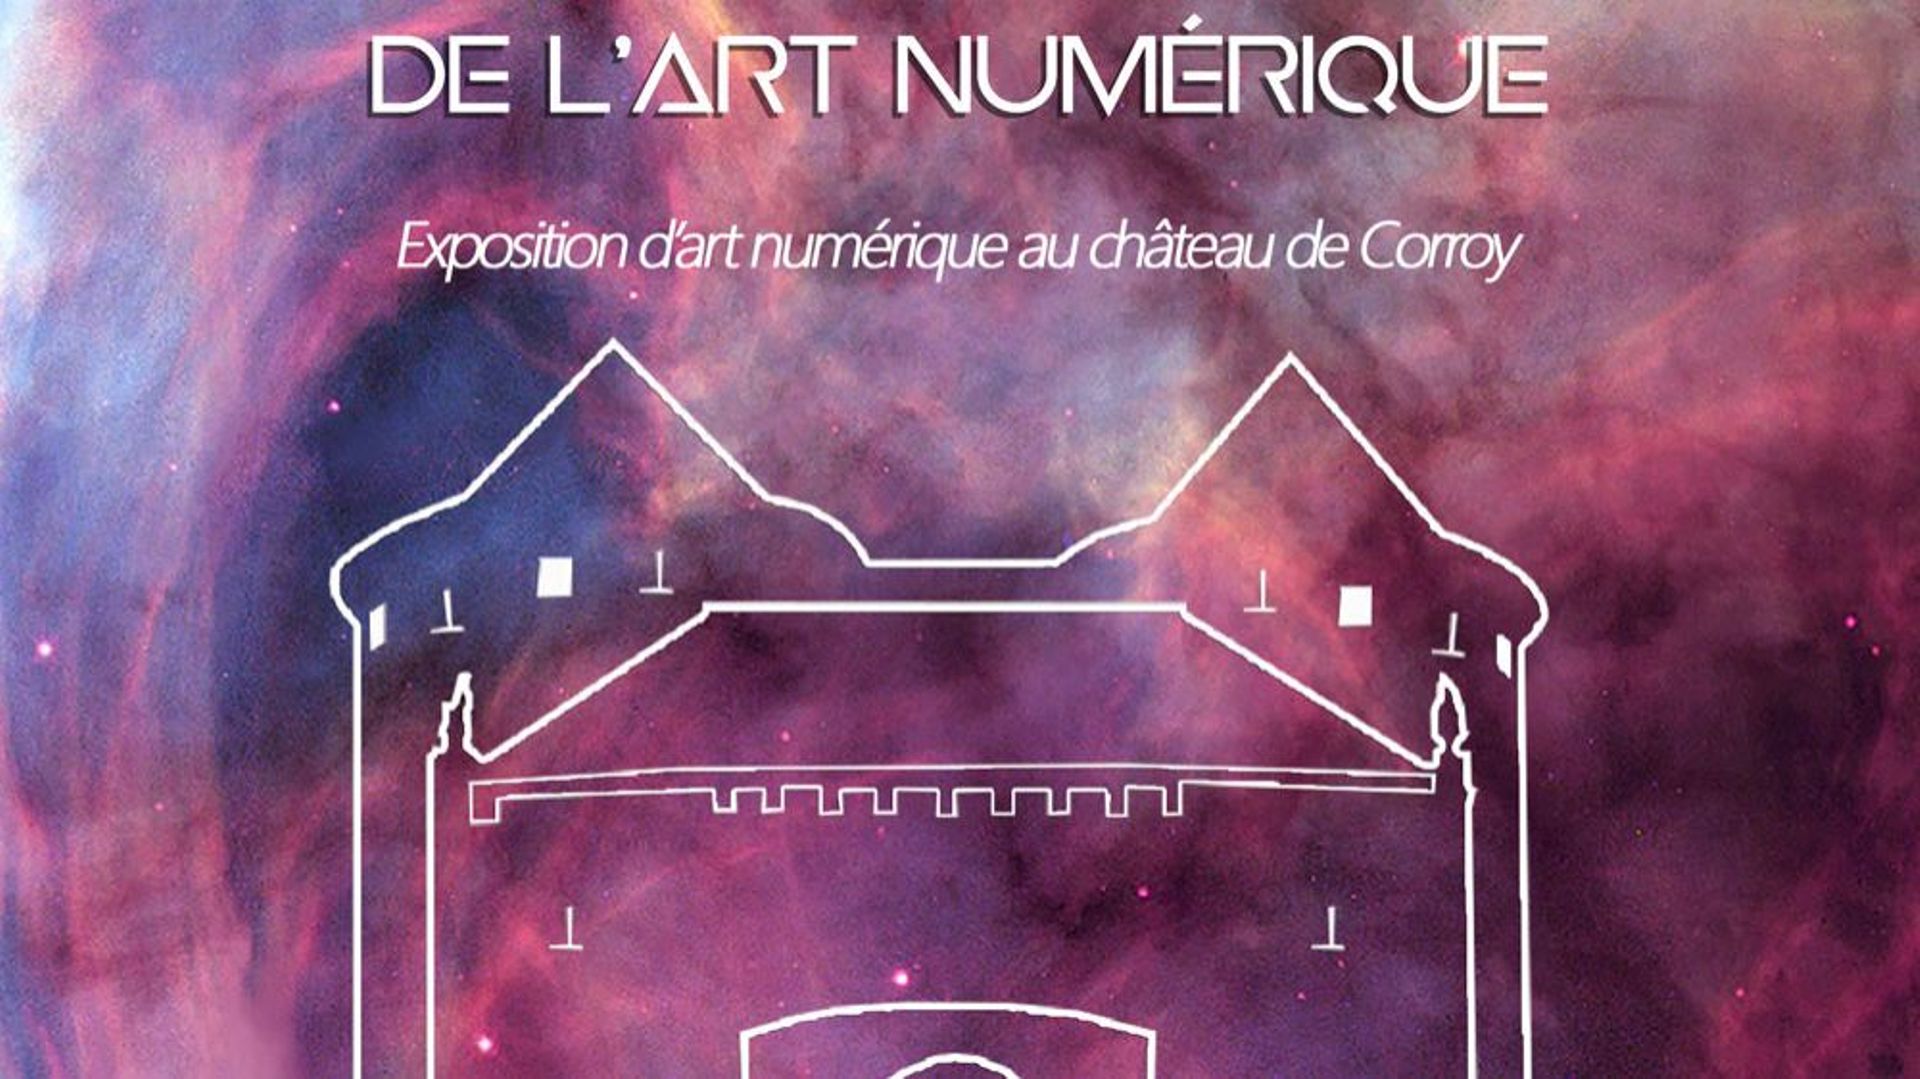 “EXONUMERIC’ARTS - les nouvelles exoplanètes du numérique au Château de Corroy”